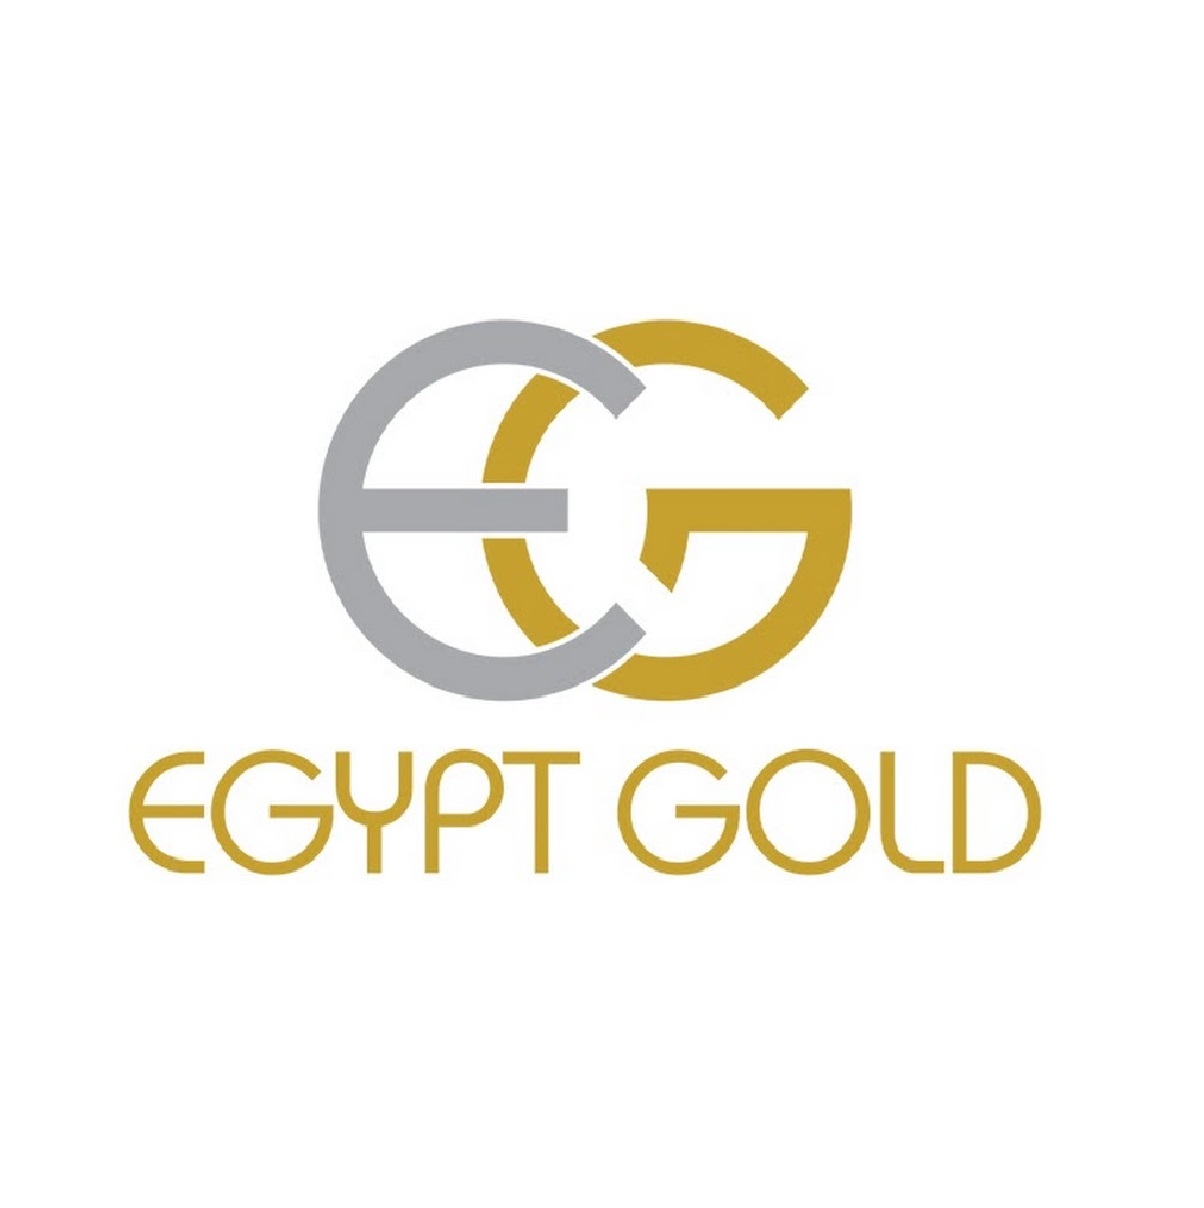 New Egypt Gold